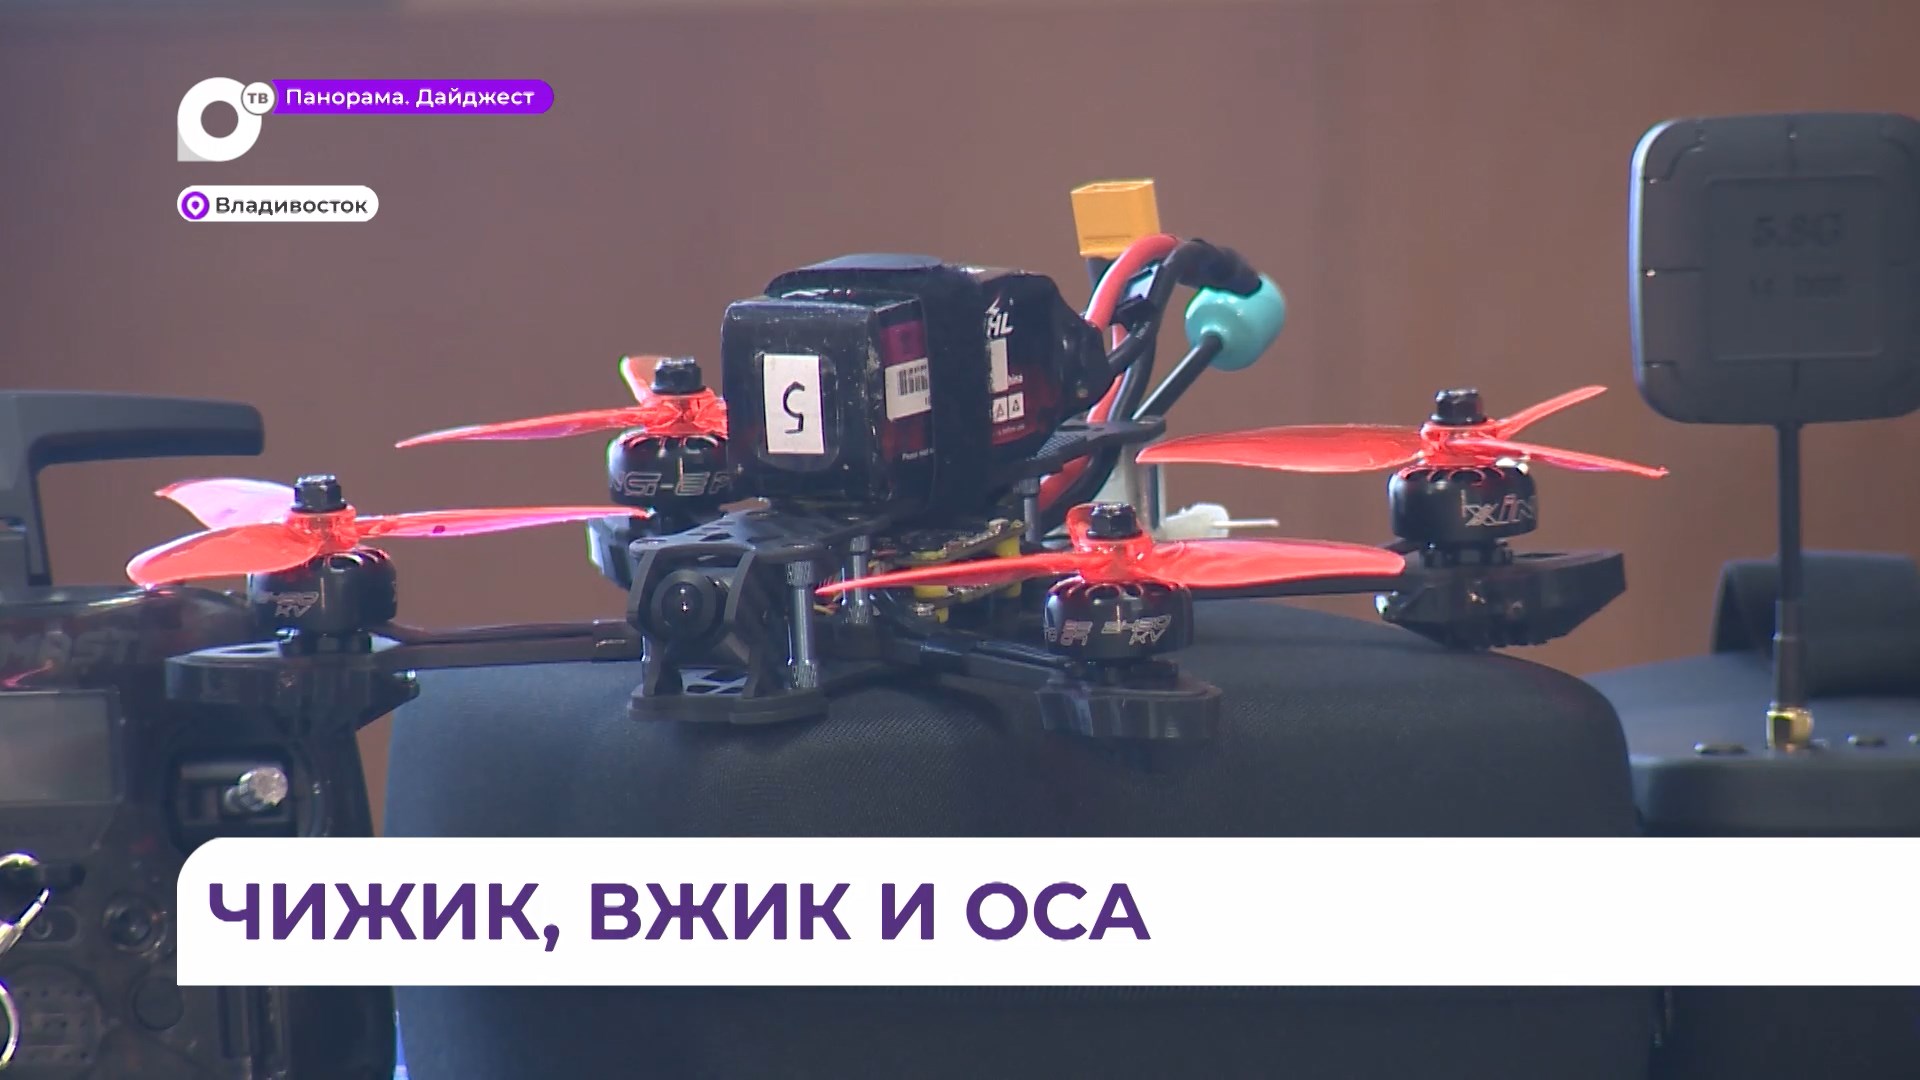 В Приморье учителя ОБЖ будут преподавать эксплуатацию и программирование дронов